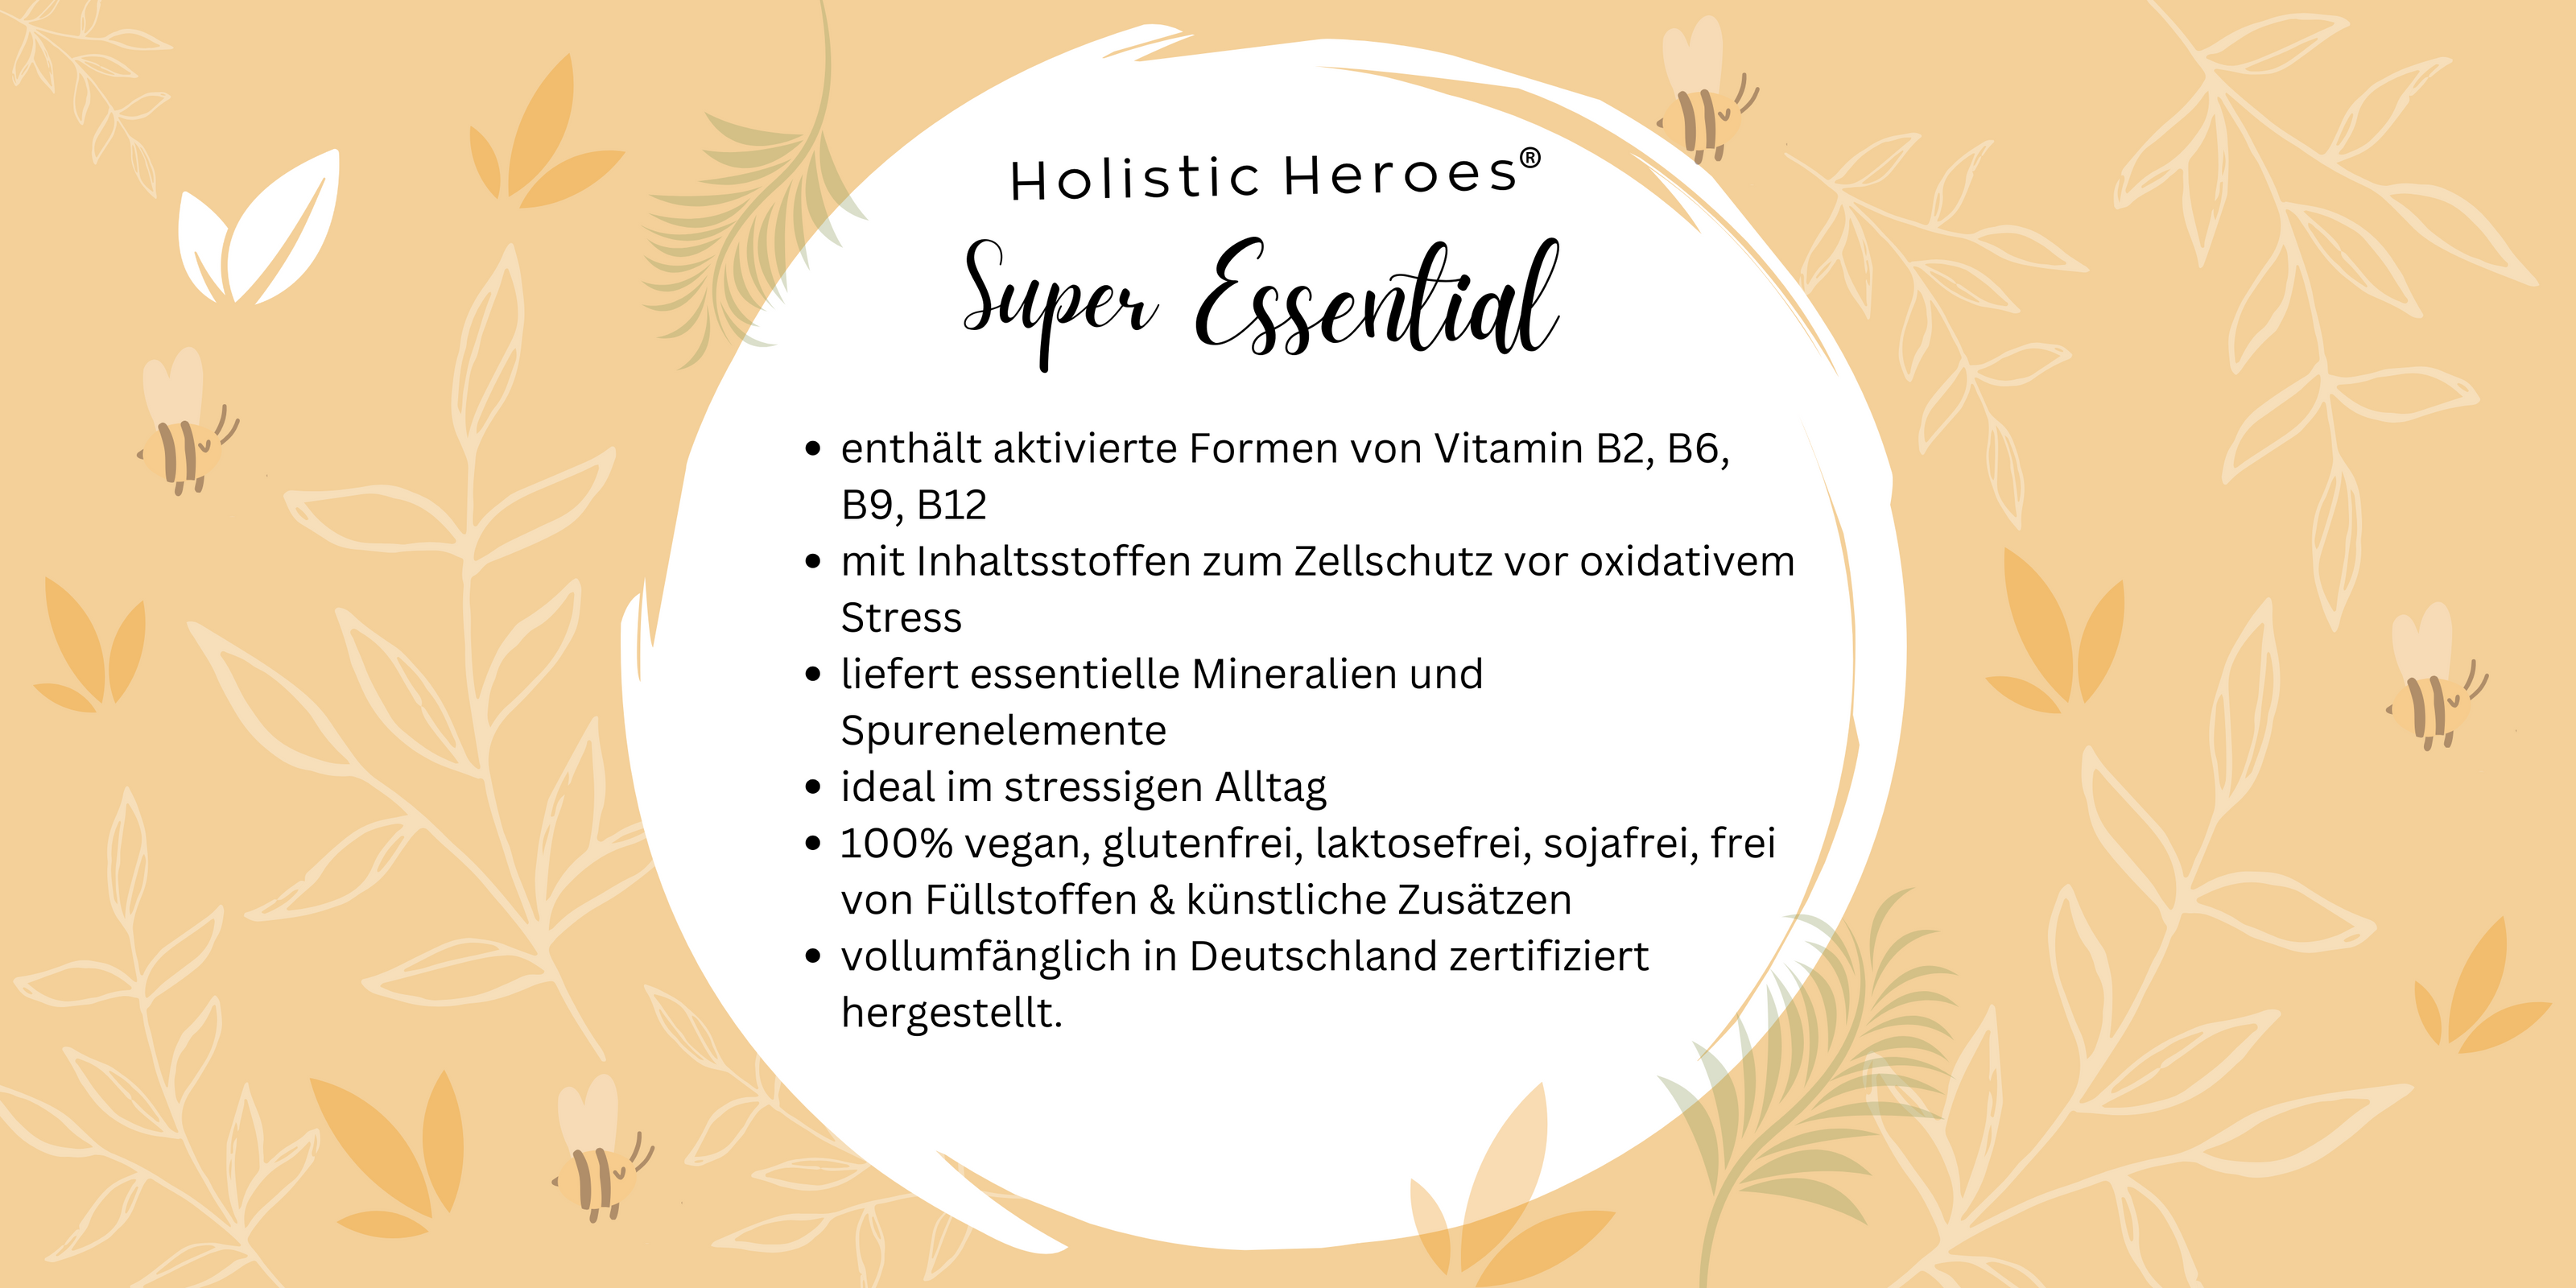 Vorteile von Holistic Heroes Super Essential fürs Immunsystem